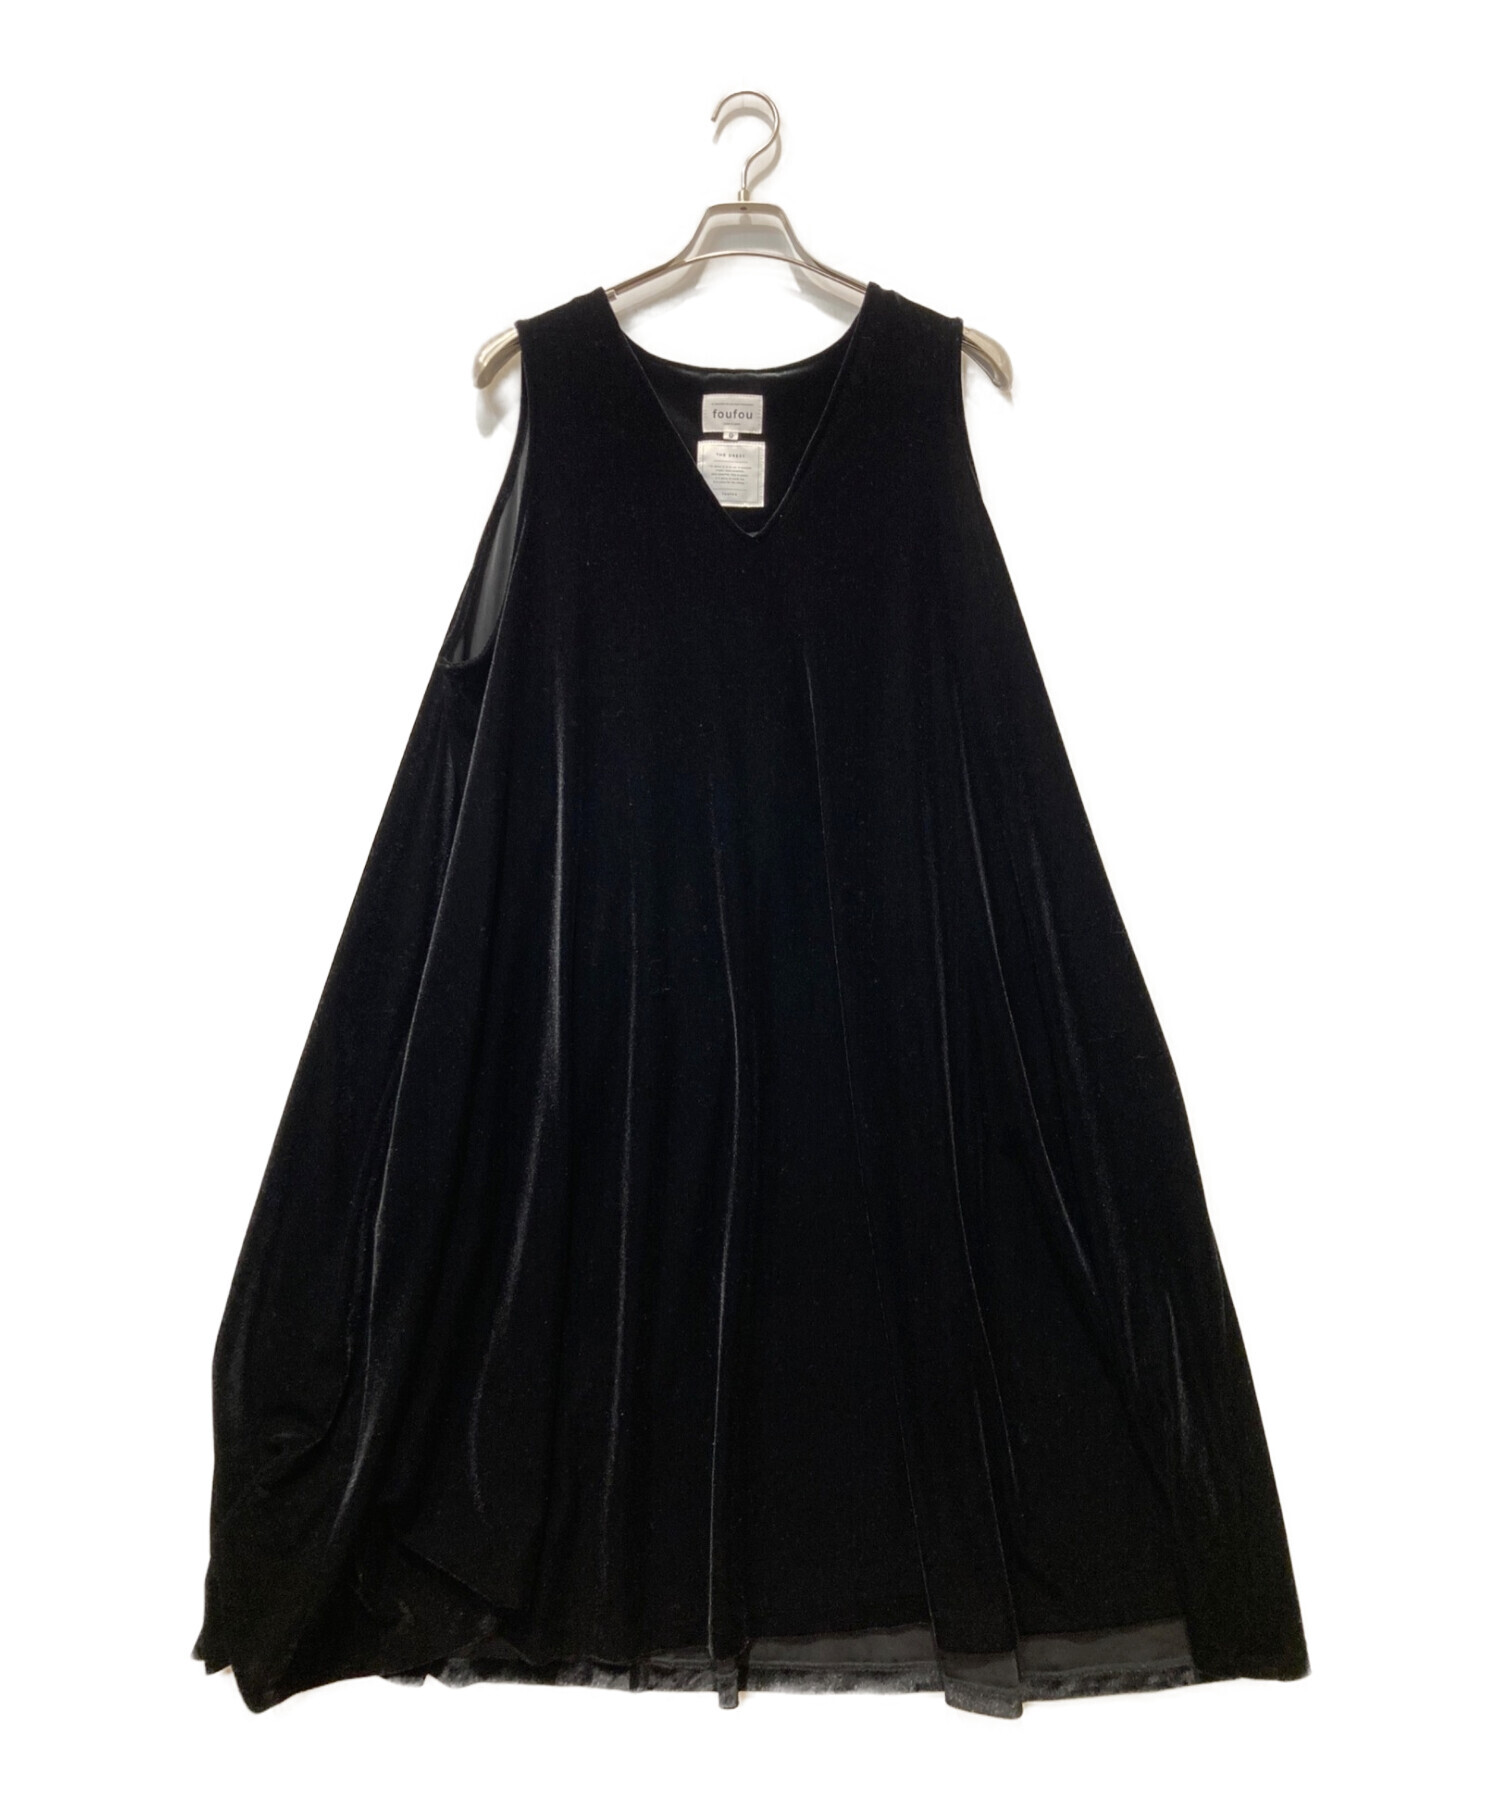 foufou (フーフー) THE DRESS #16ノースリーブベロアワンピース ブラック